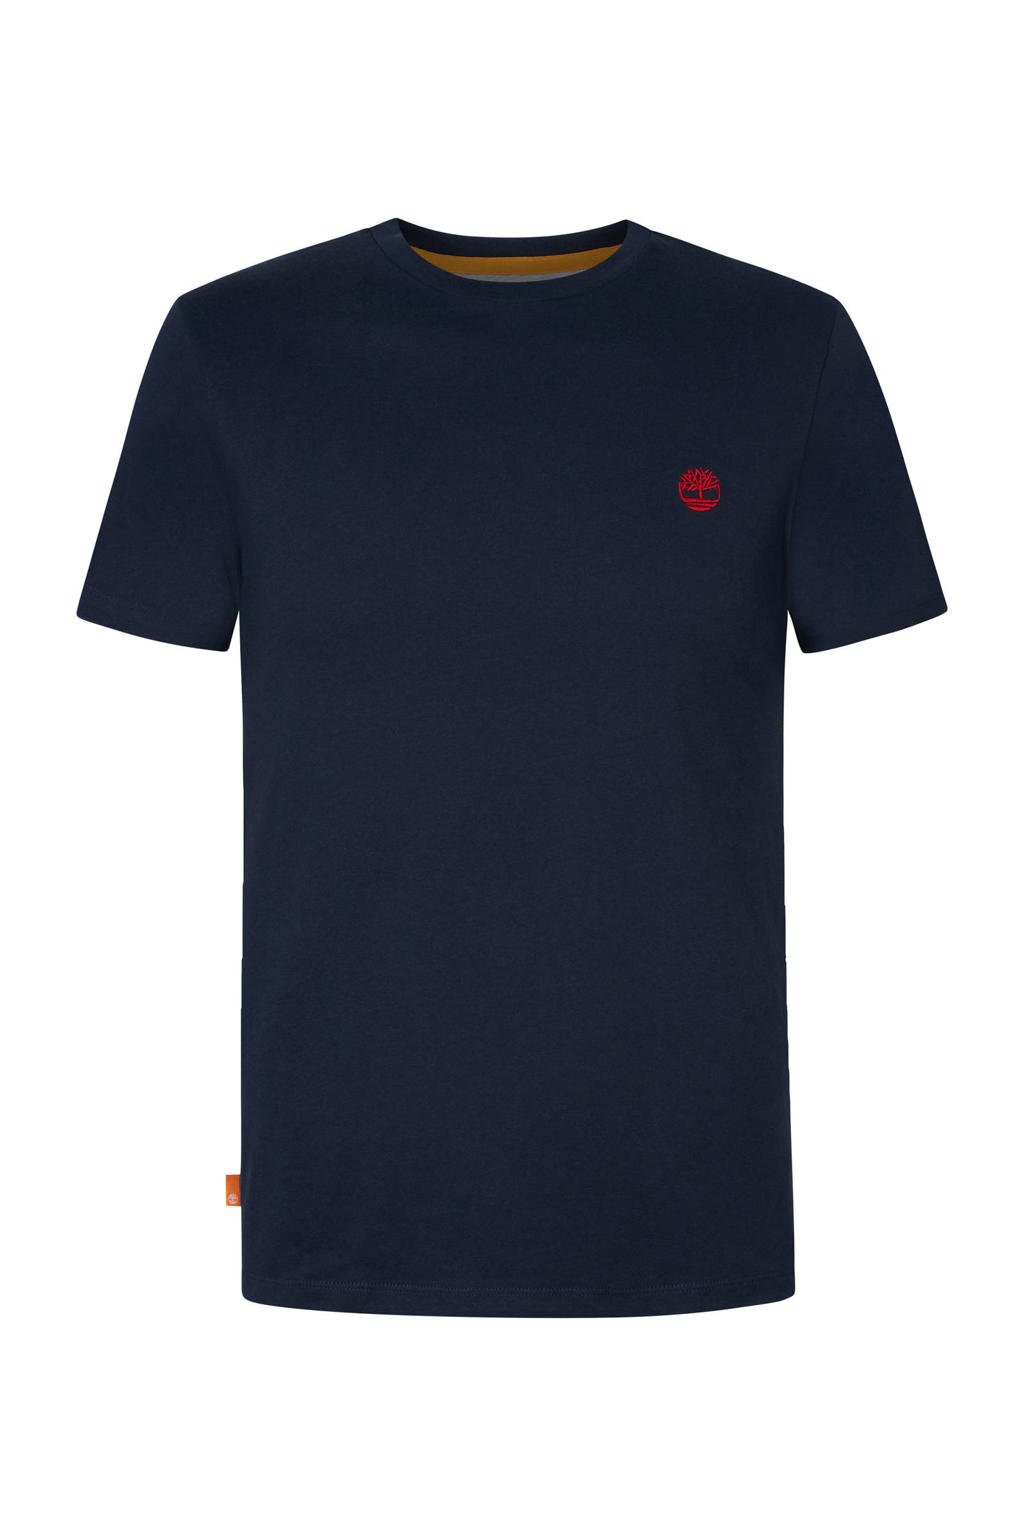 Donkerblauwe heren Timberland T-shirt van biologisch katoen met logo dessin, korte mouwen en ronde hals